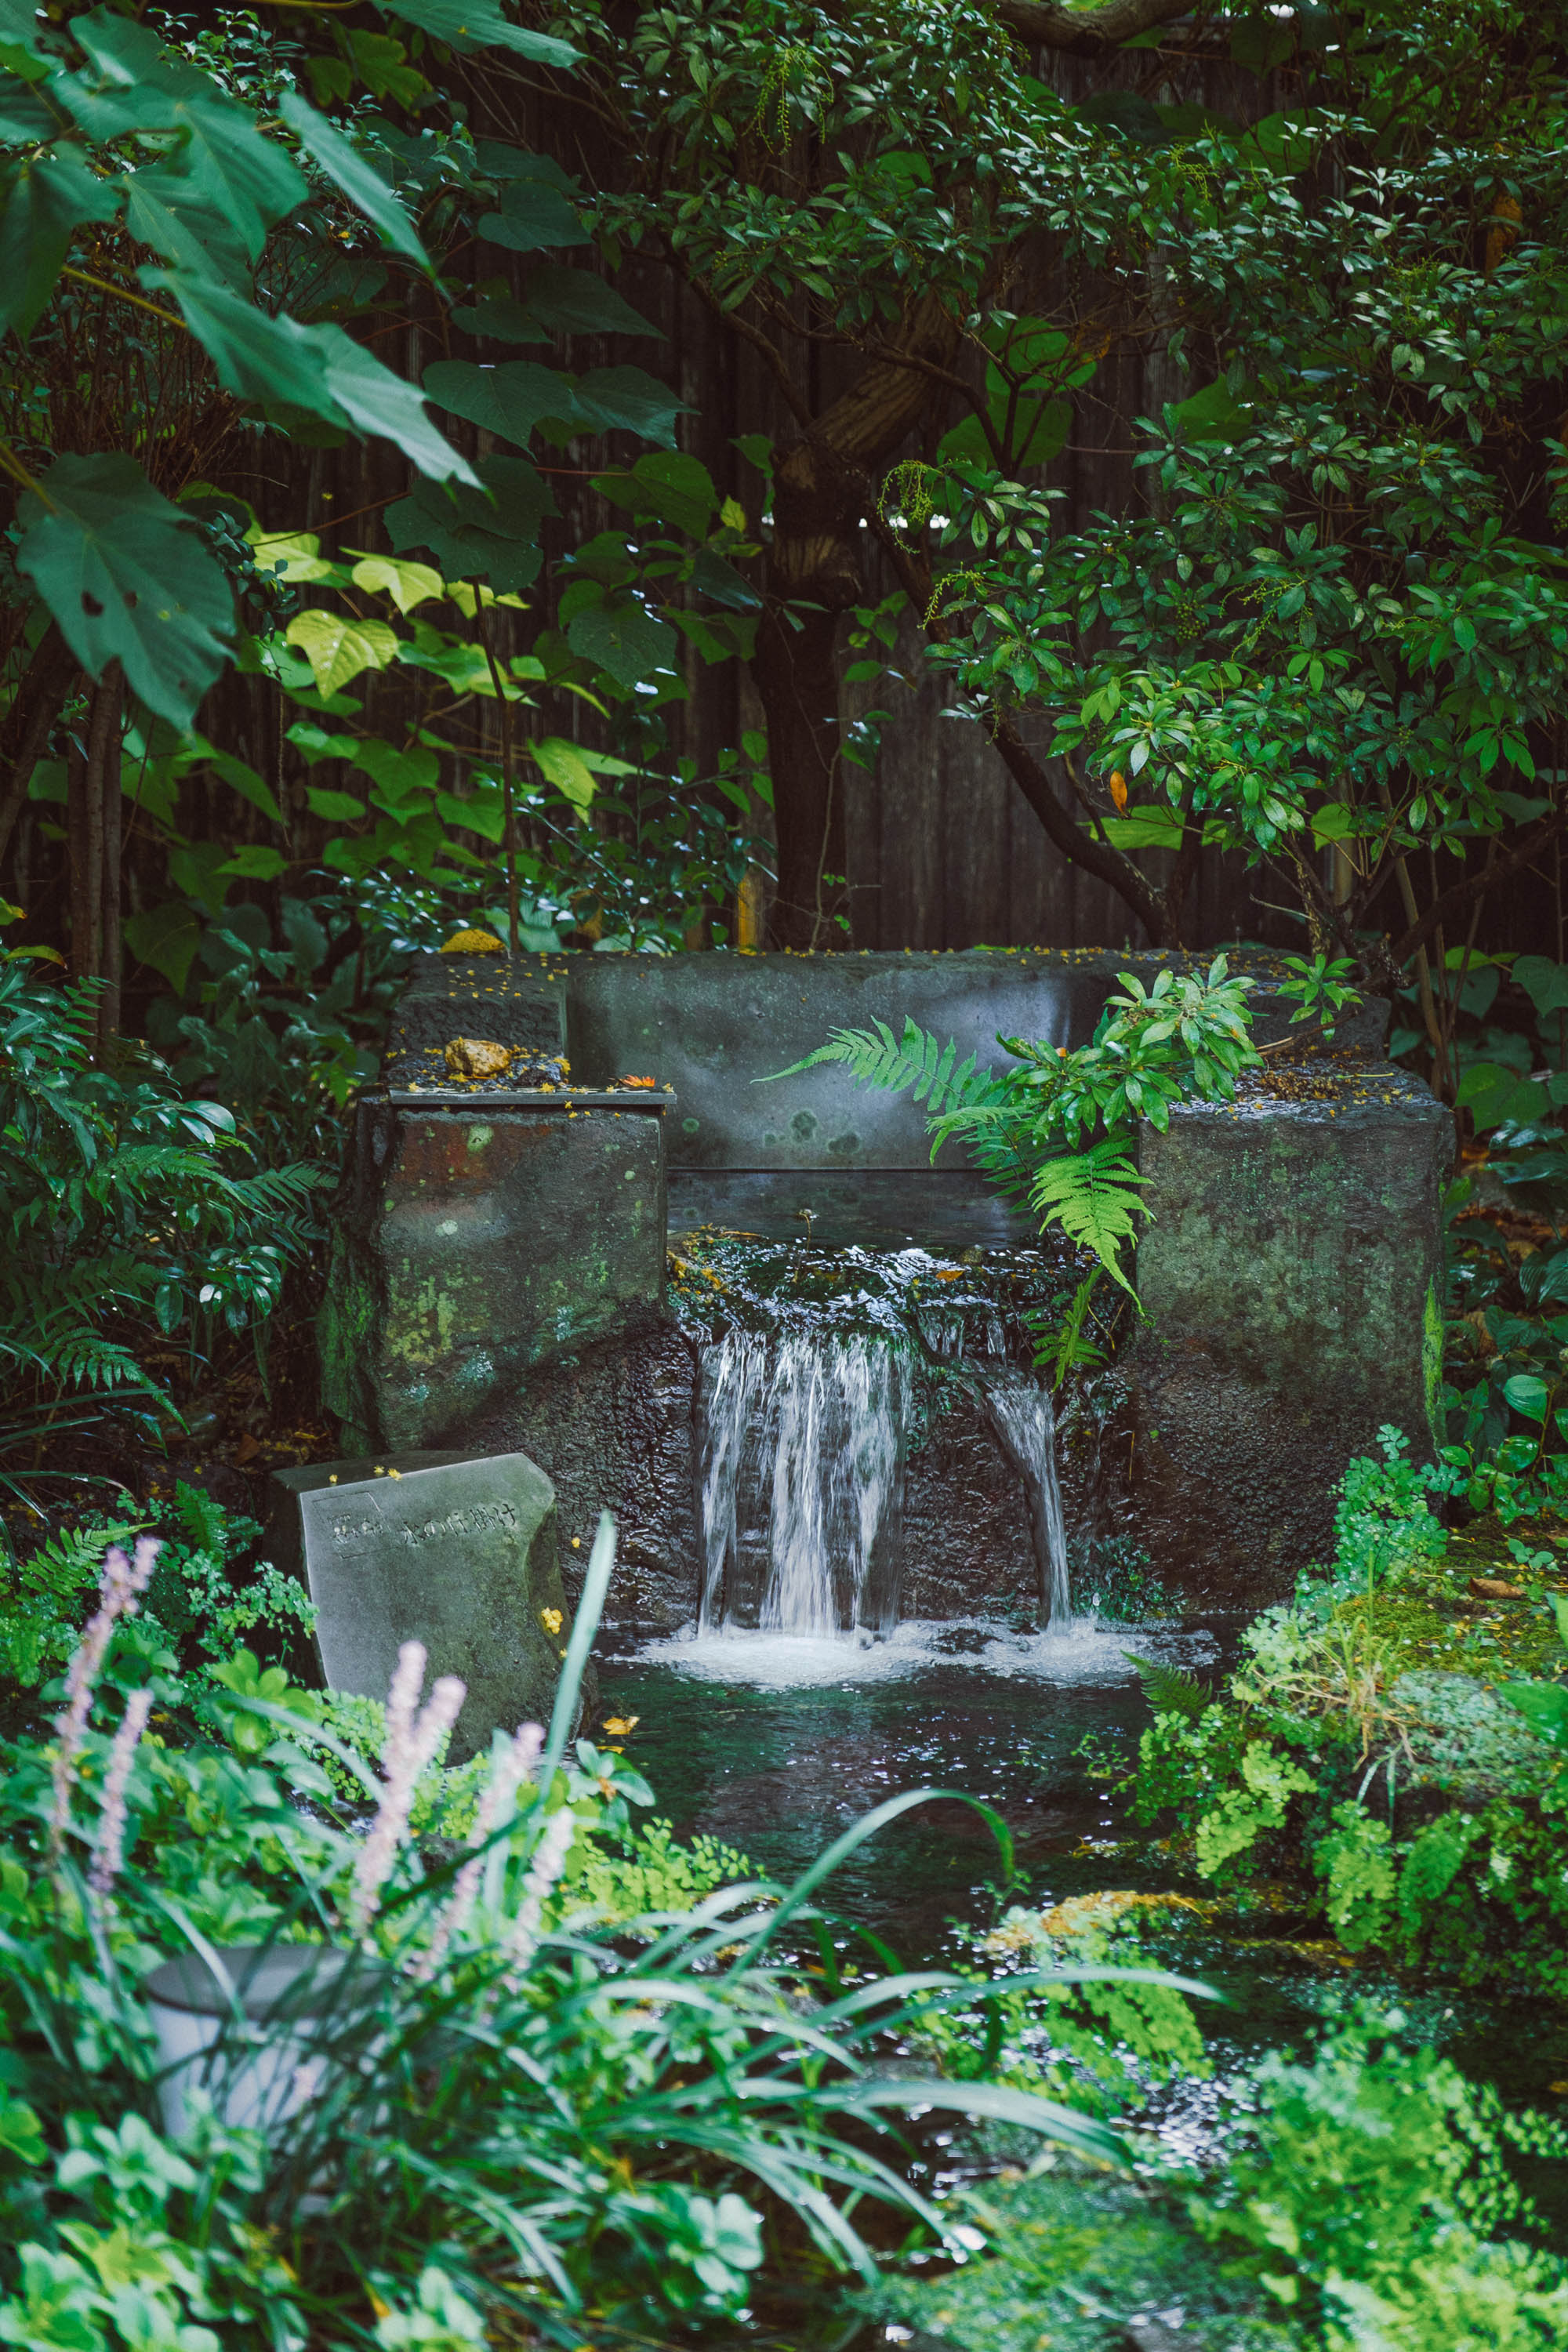 和カフェ兎月園から徒歩で約3分の「源兵衛川（げんべえがわ）」で優雅な朝散歩を楽しむ。三島は、富士山の伏流水が、街中のいたるところで湧き出ている珍しい地域で、「水の郷百選」にも選ばれている“水の都”。源兵衛川は、その水の都・三島を代表する清流で、初夏の夜にはホタルも舞う水辺スポット。